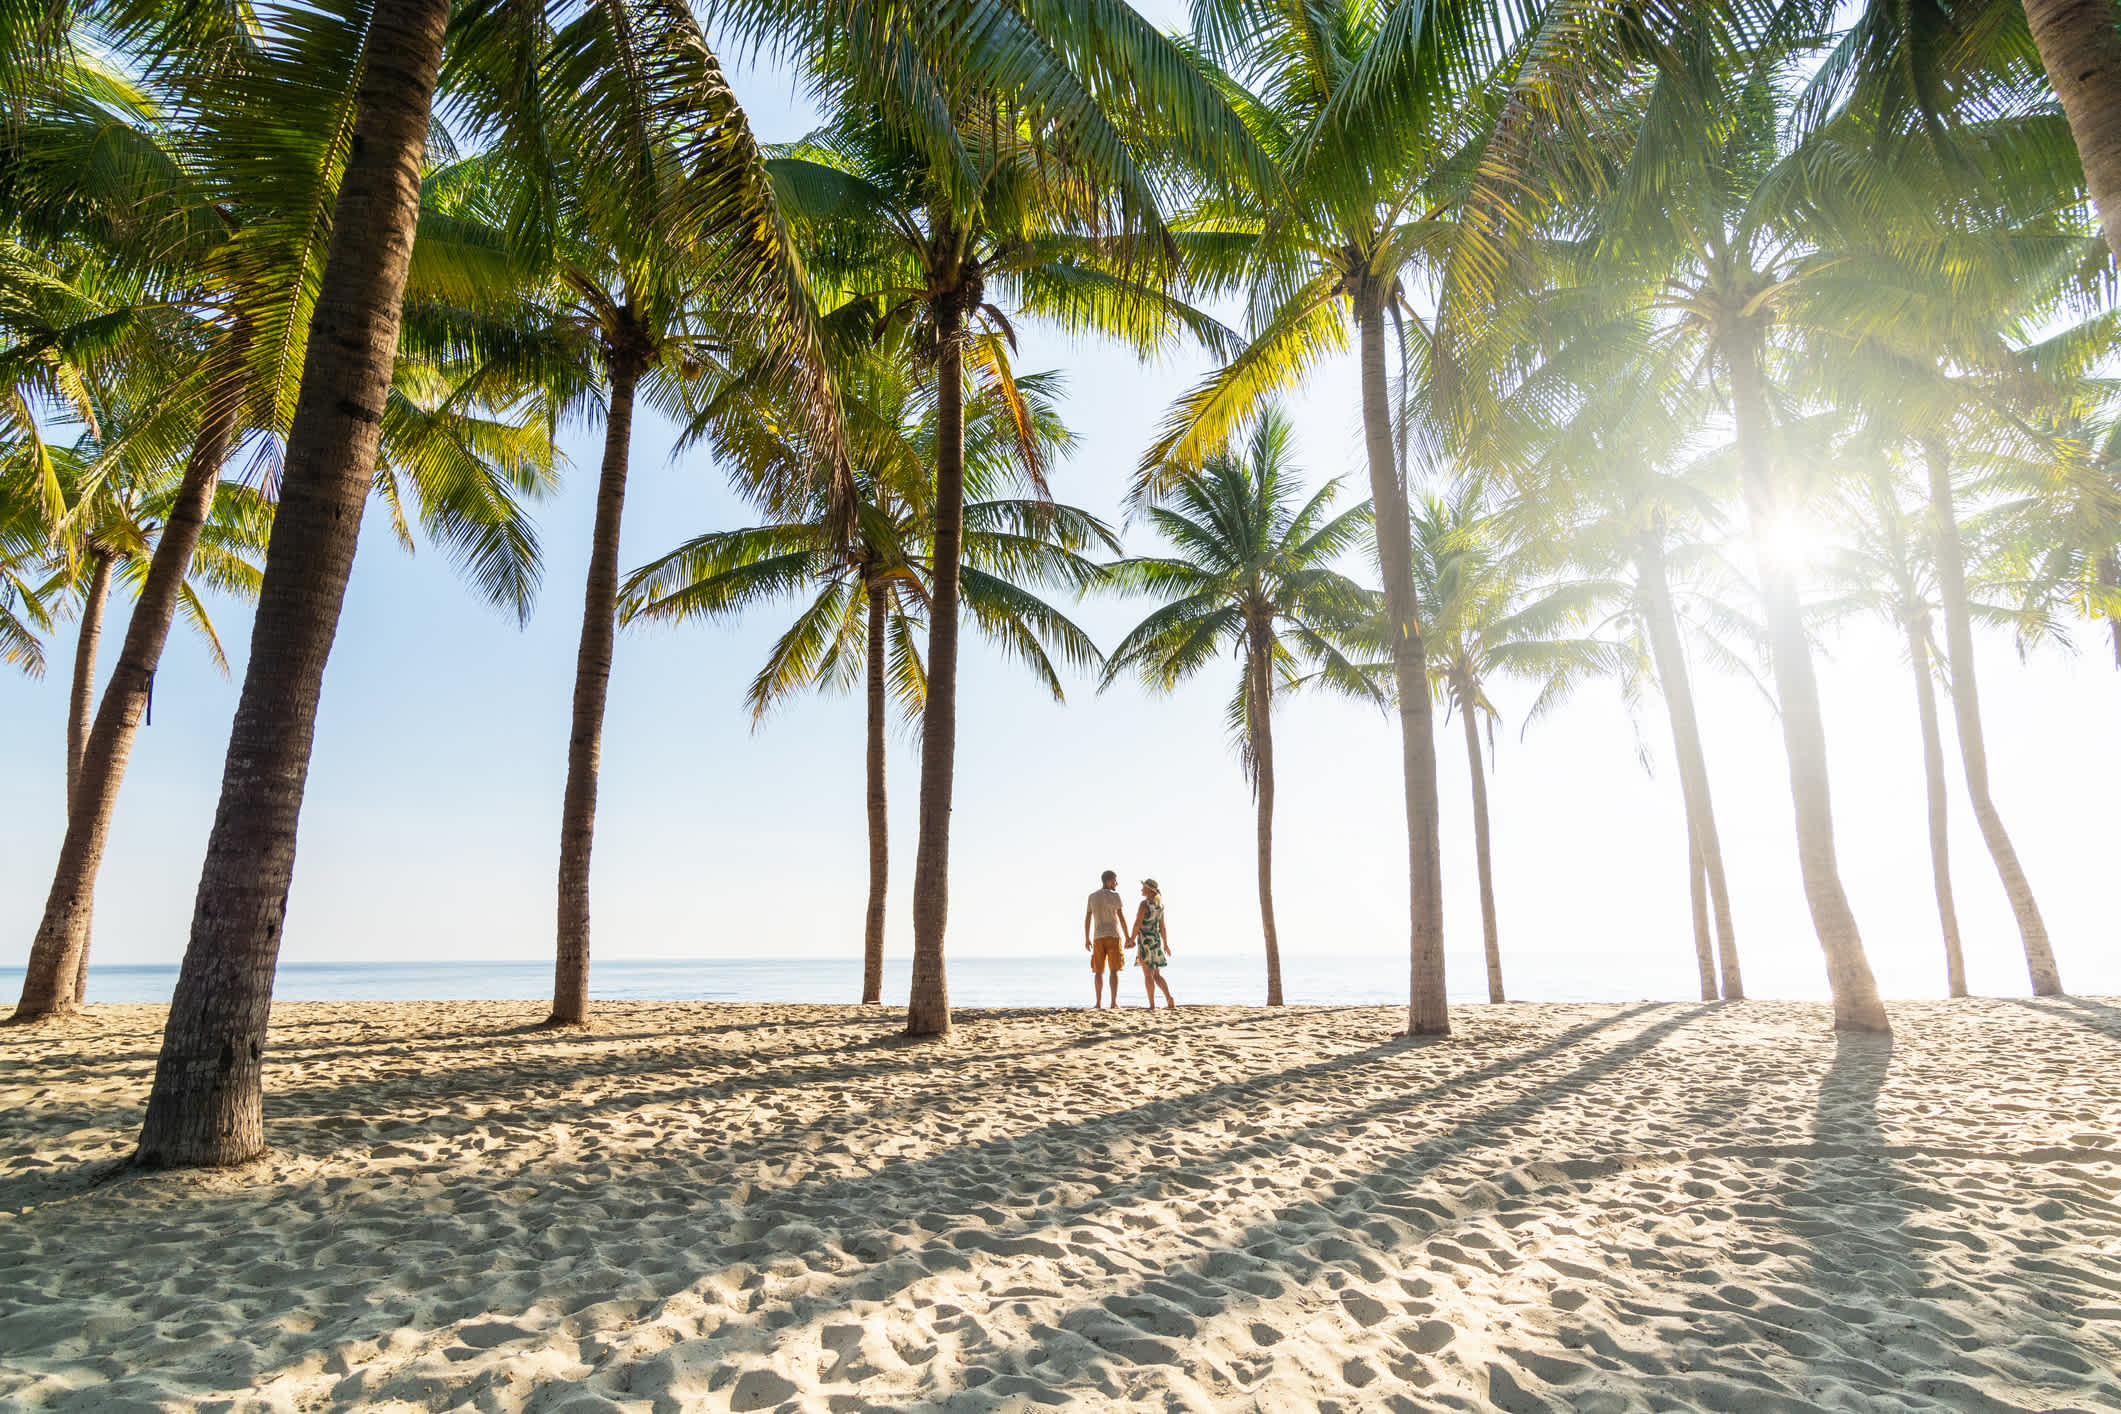 Un couple se tient sur une plage de sable entre des palmiers au Vietnam.

